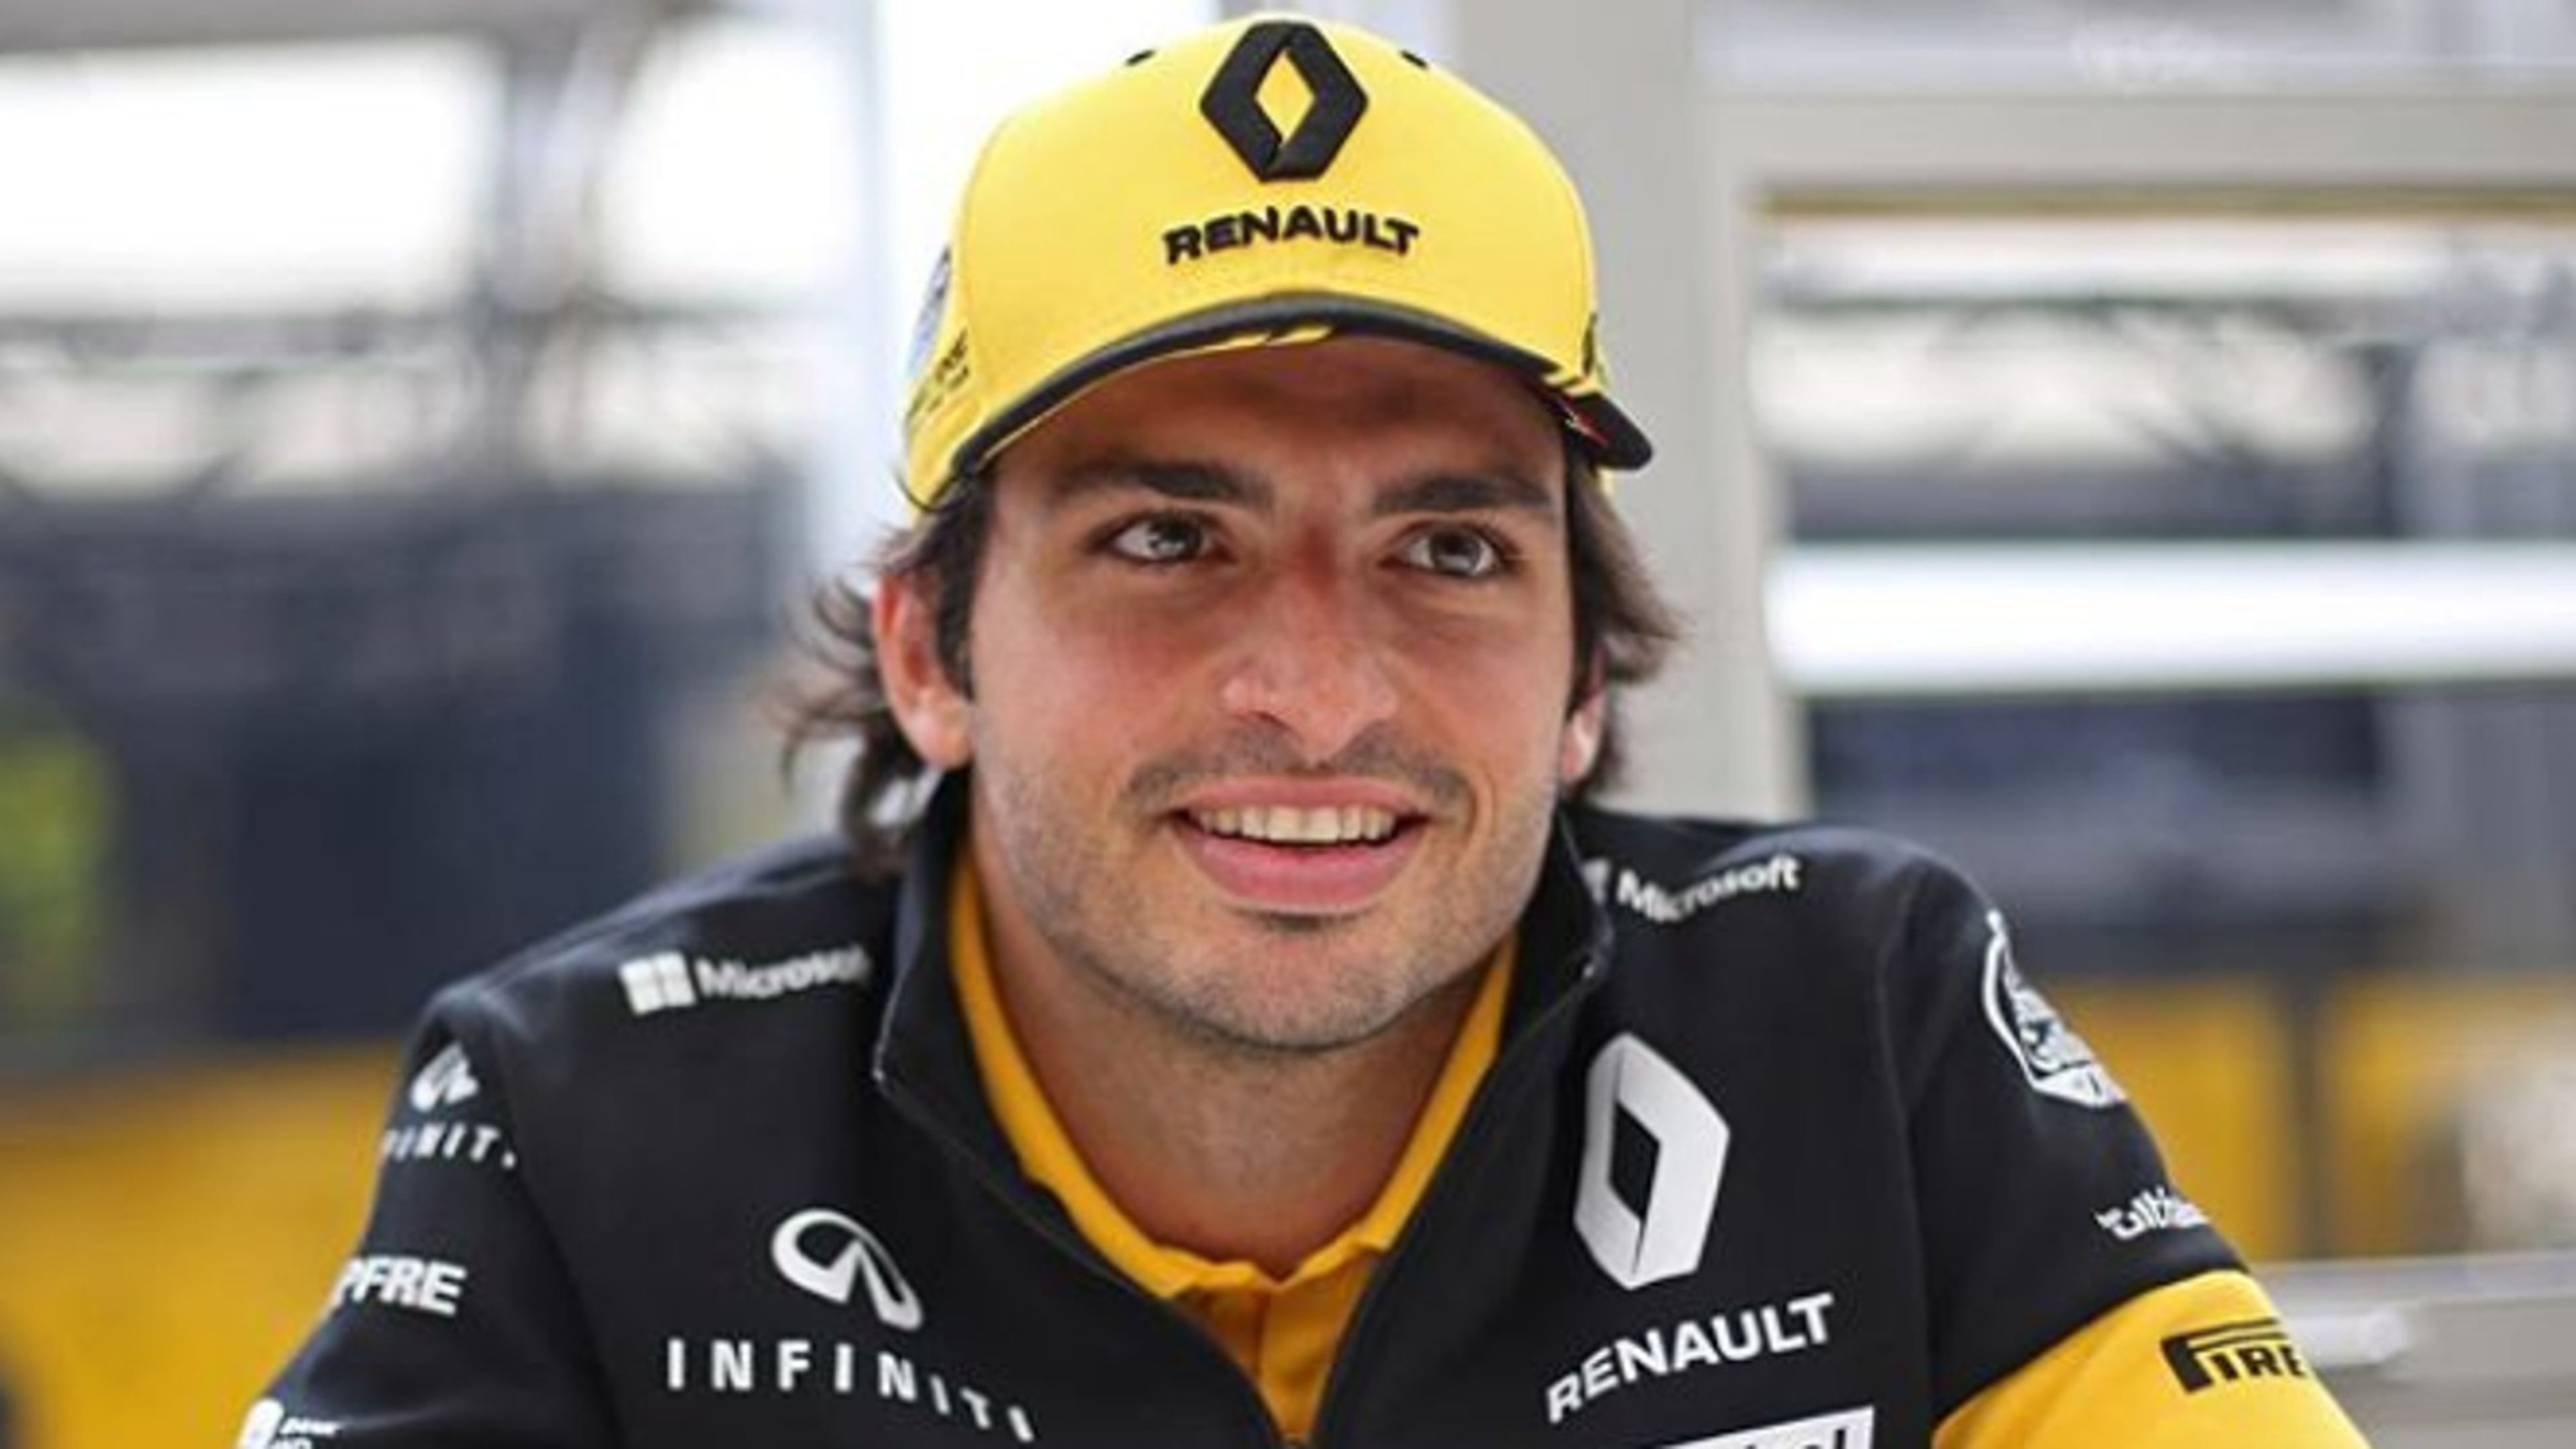 Renault anunciará en Spa si Sainz sigue en 2019